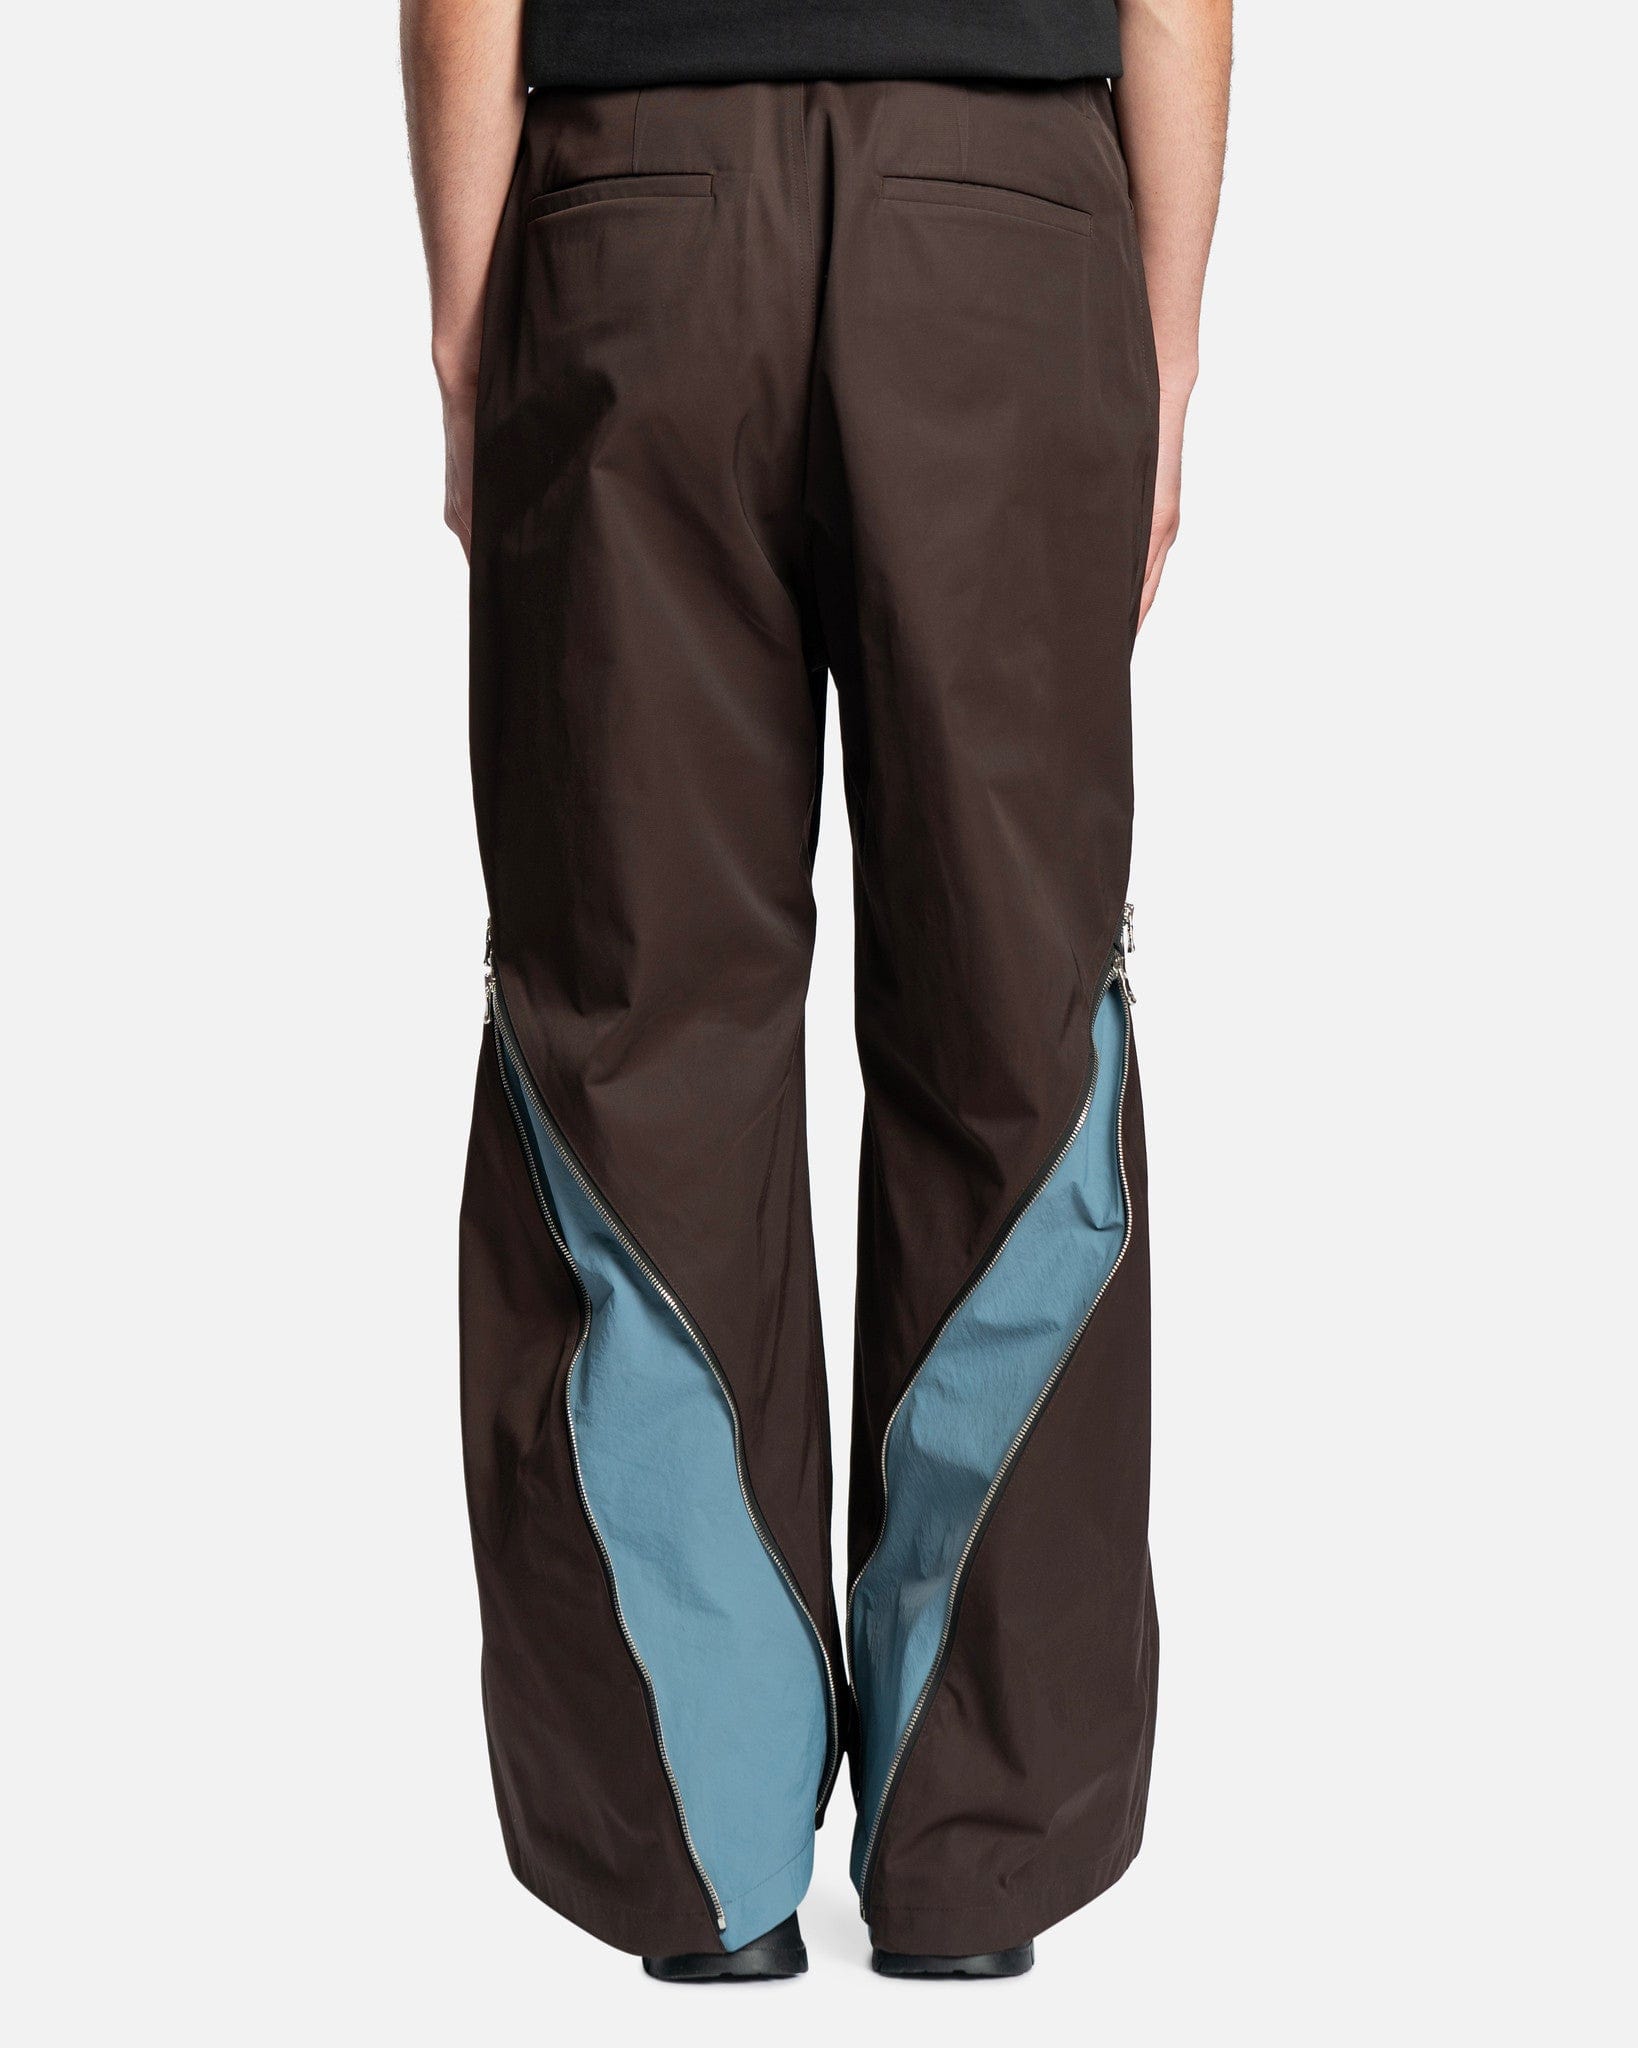 FFFPOSTALSERVICE Men's Pants 3-Way Zip Trouser in Brown/Blue